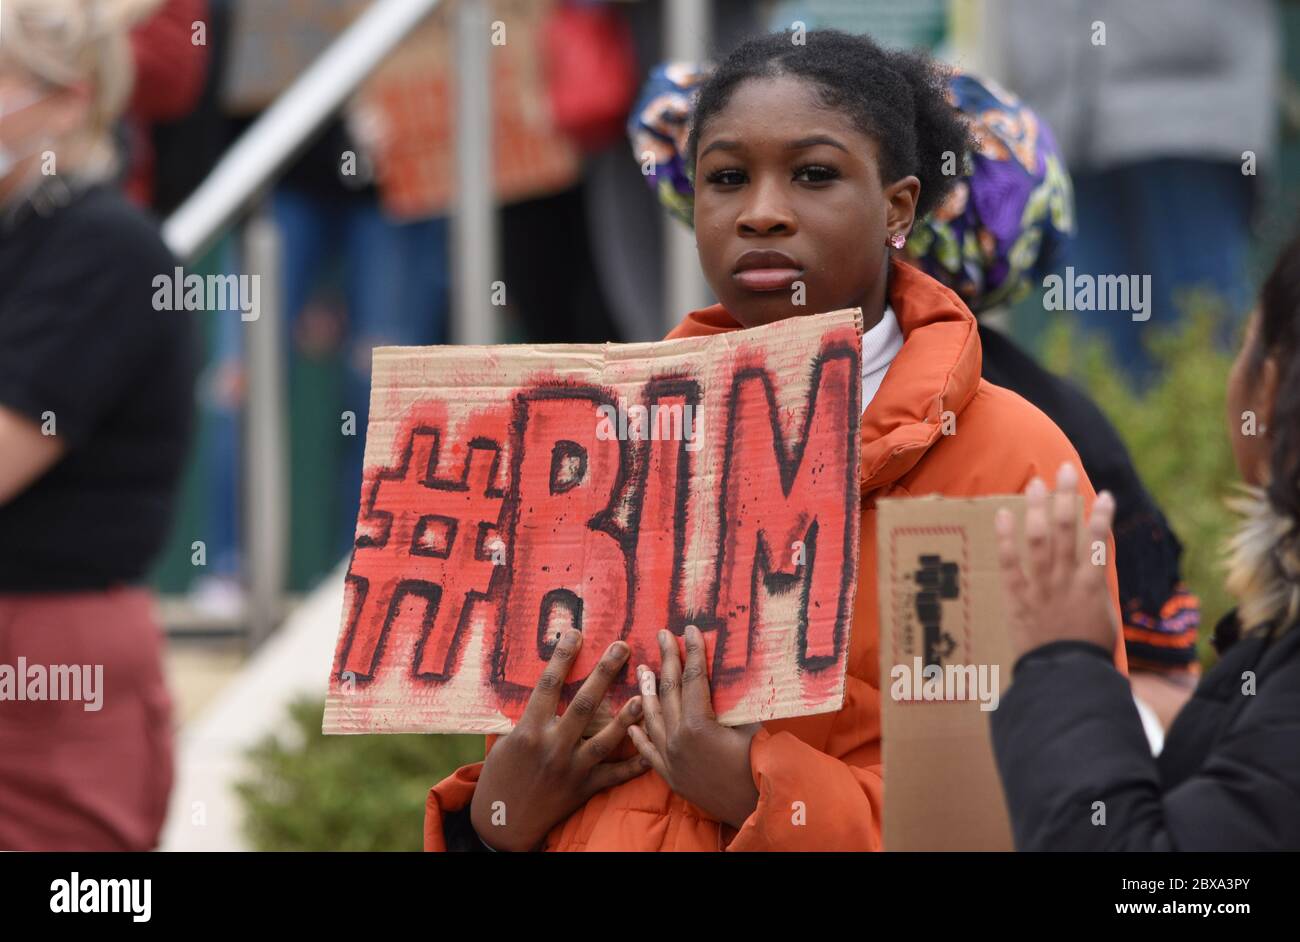 Une jeune femme britannique noire protestant contre le racisme Black Lives Matter Rally au Royaume-Uni à la suite de l'assassinat illégal de George Floyd aux États-Unis Banque D'Images